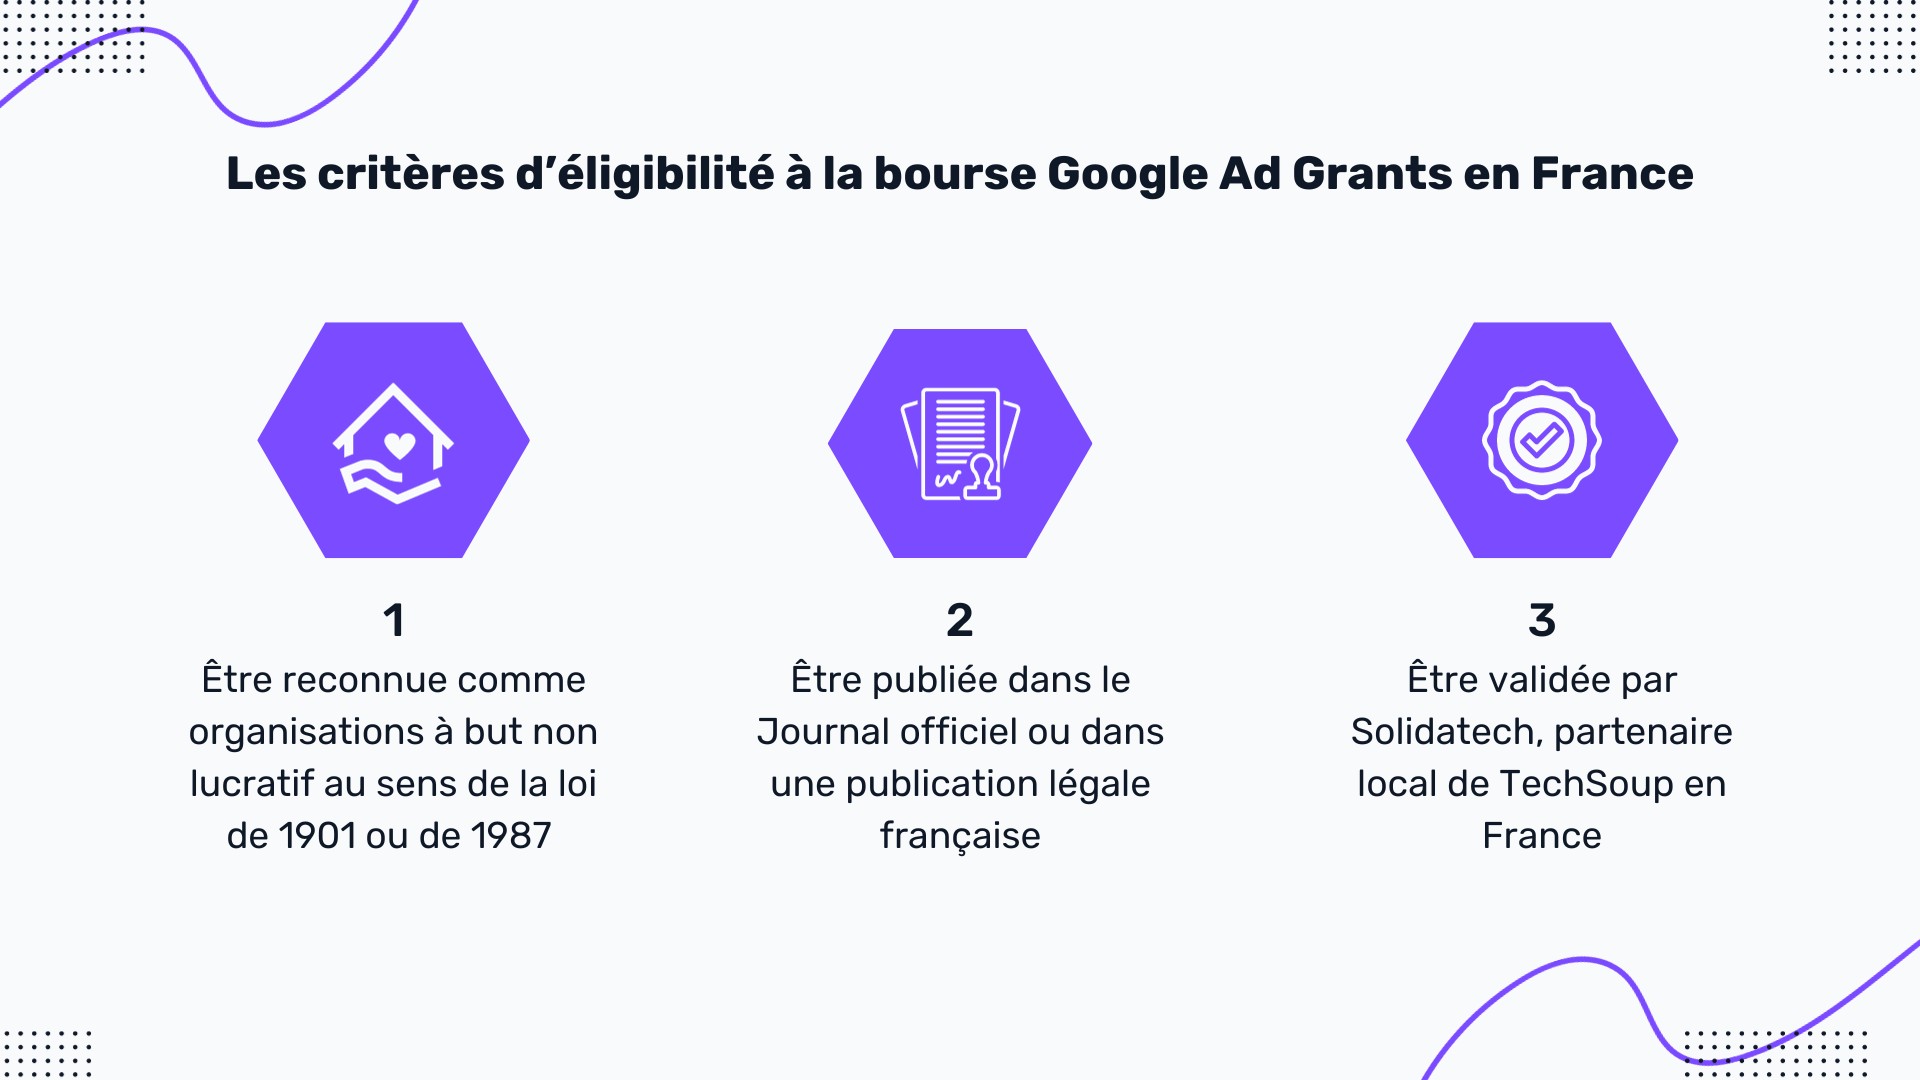 illustration présentant les critères d’éligibilité à la bourse Google Ads en France